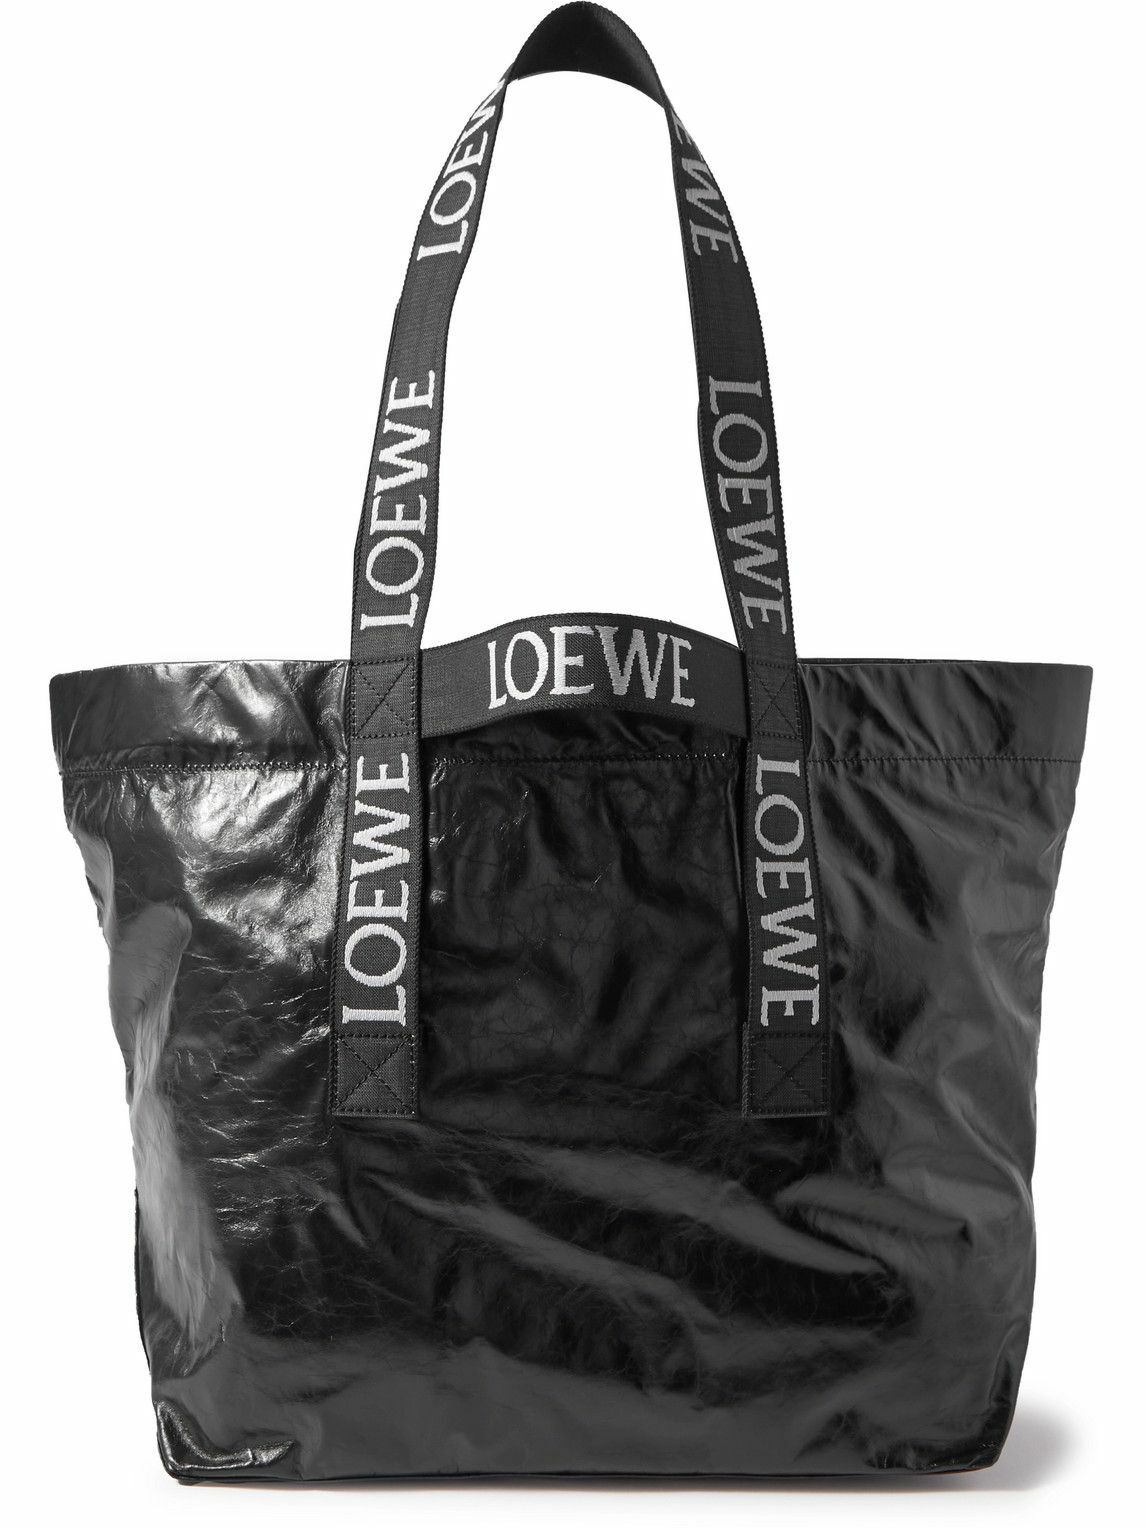 Loewe - Distressed Leather Tote Bag Loewe